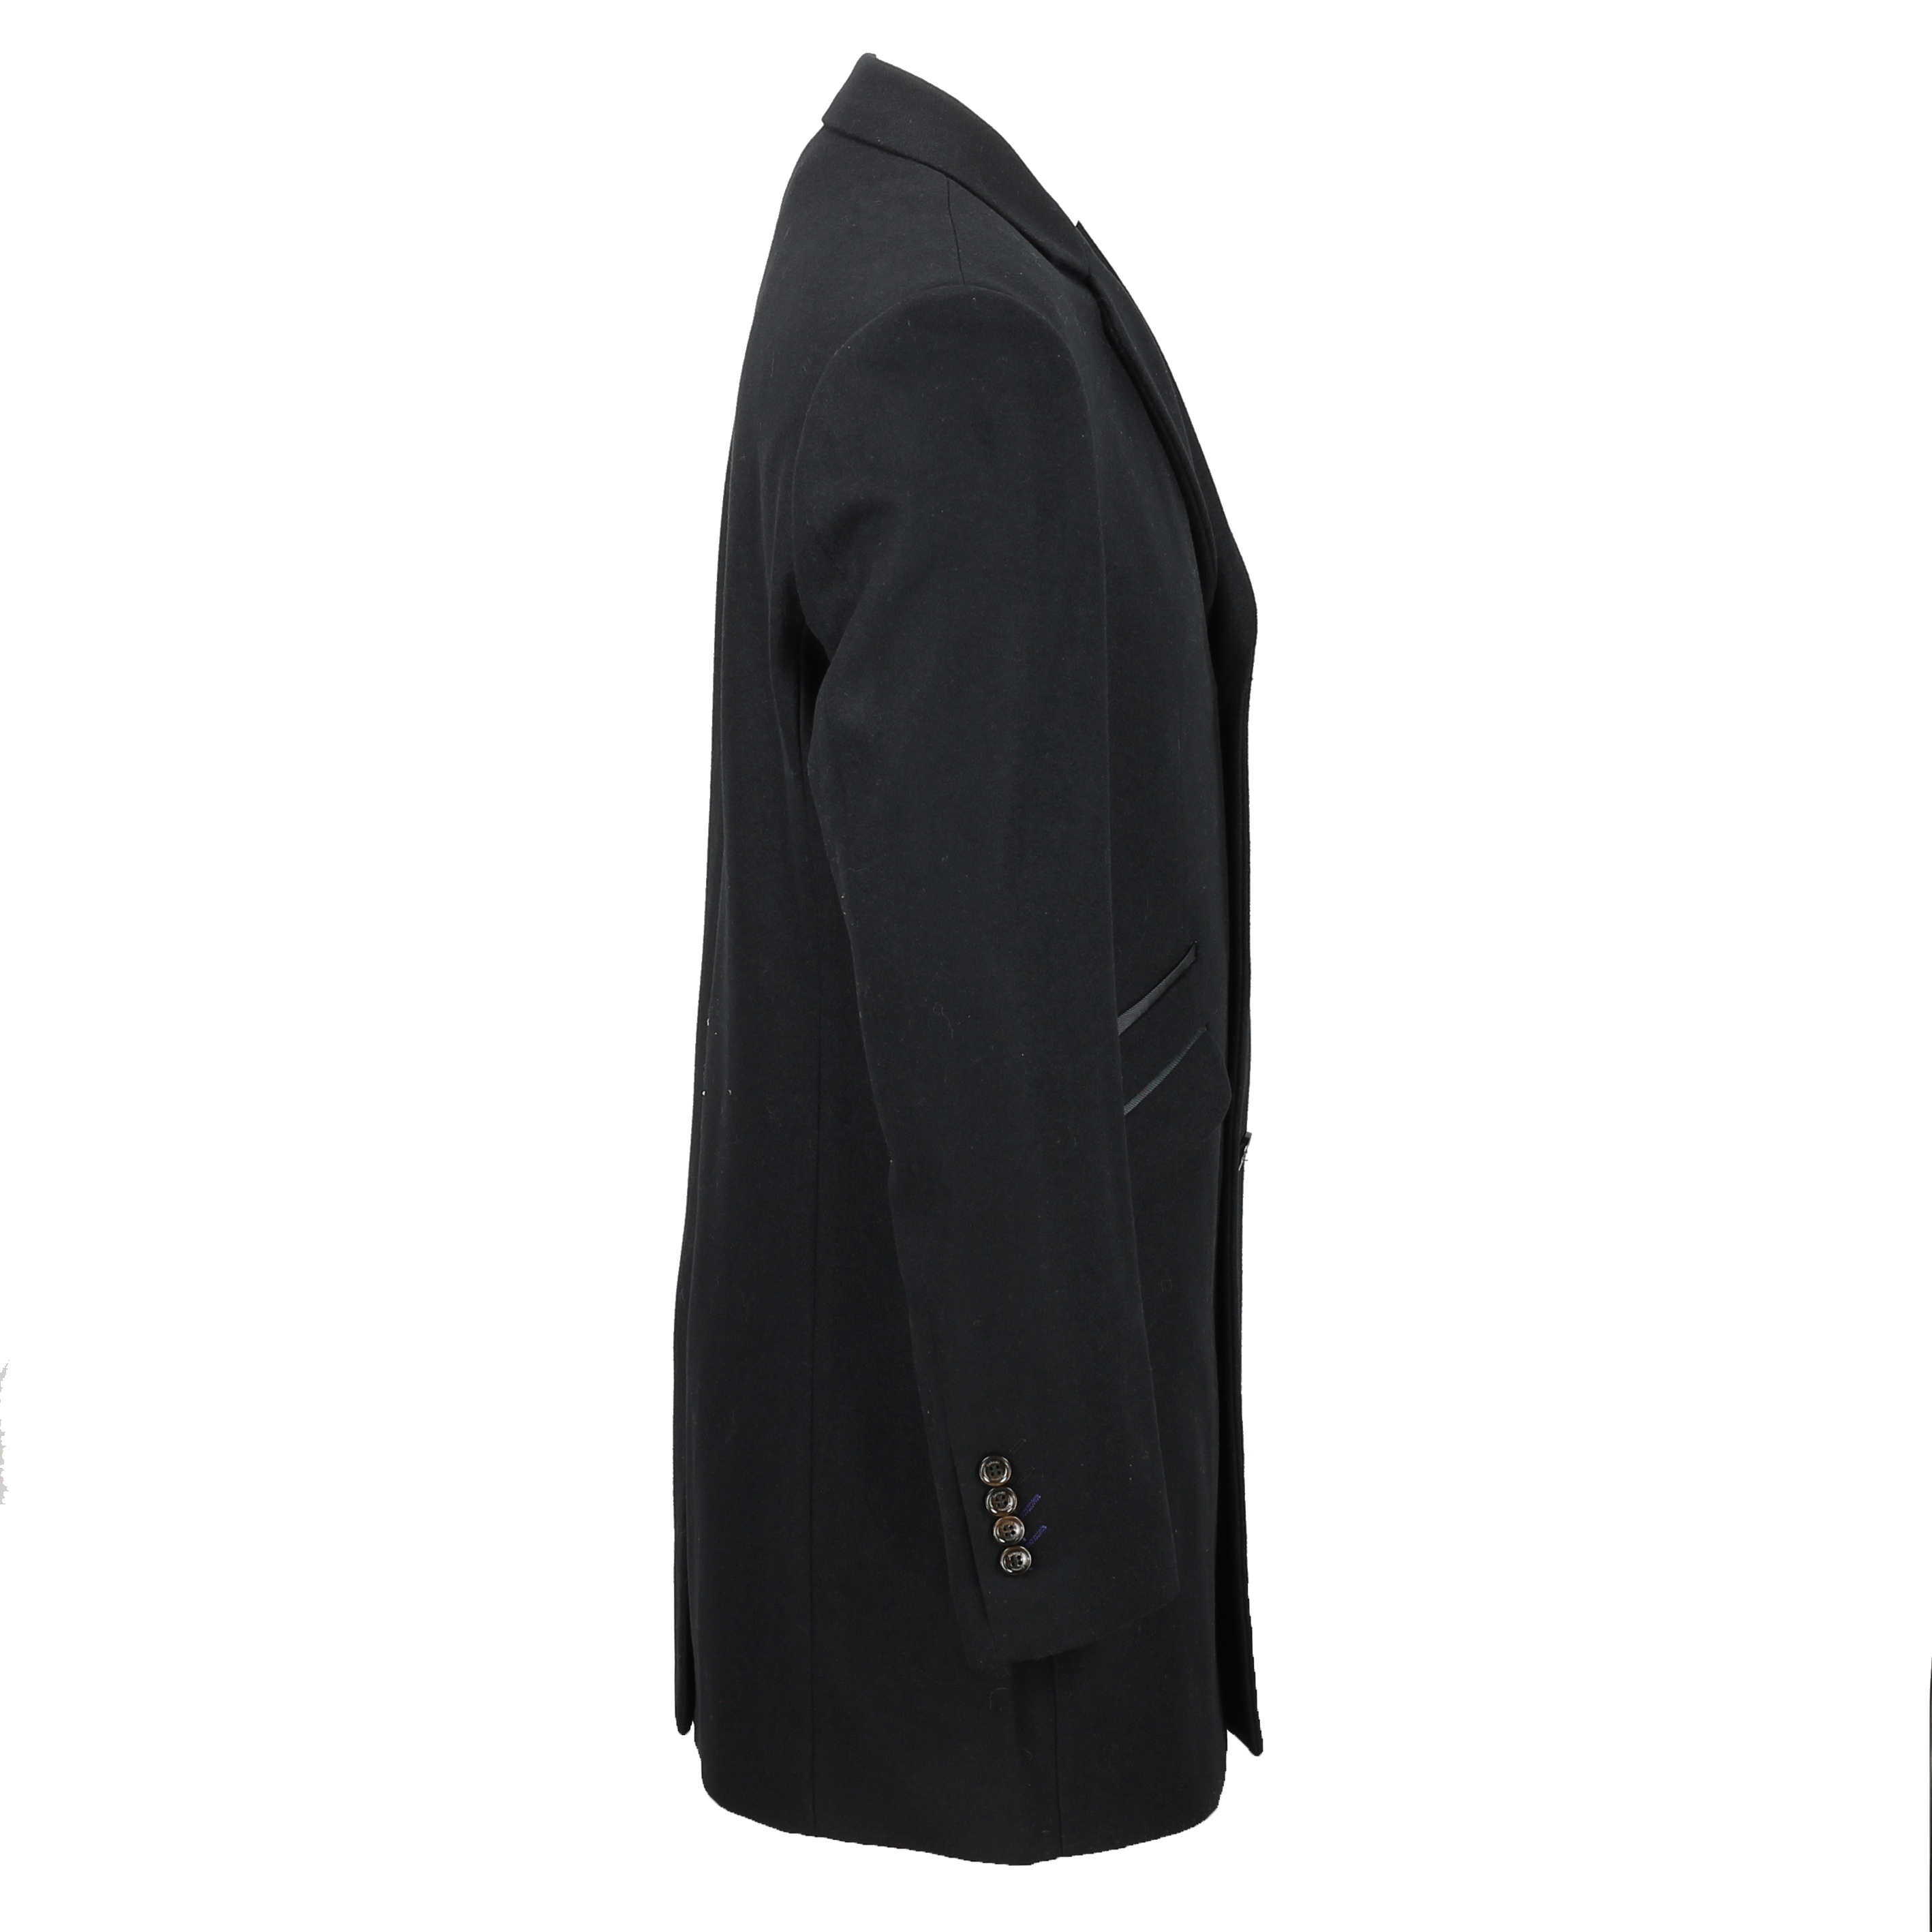 Mens Vintage Wool 3 4 Long Overcoat Tweed Crombie Winter Jacket Black Grey Navy Ebay